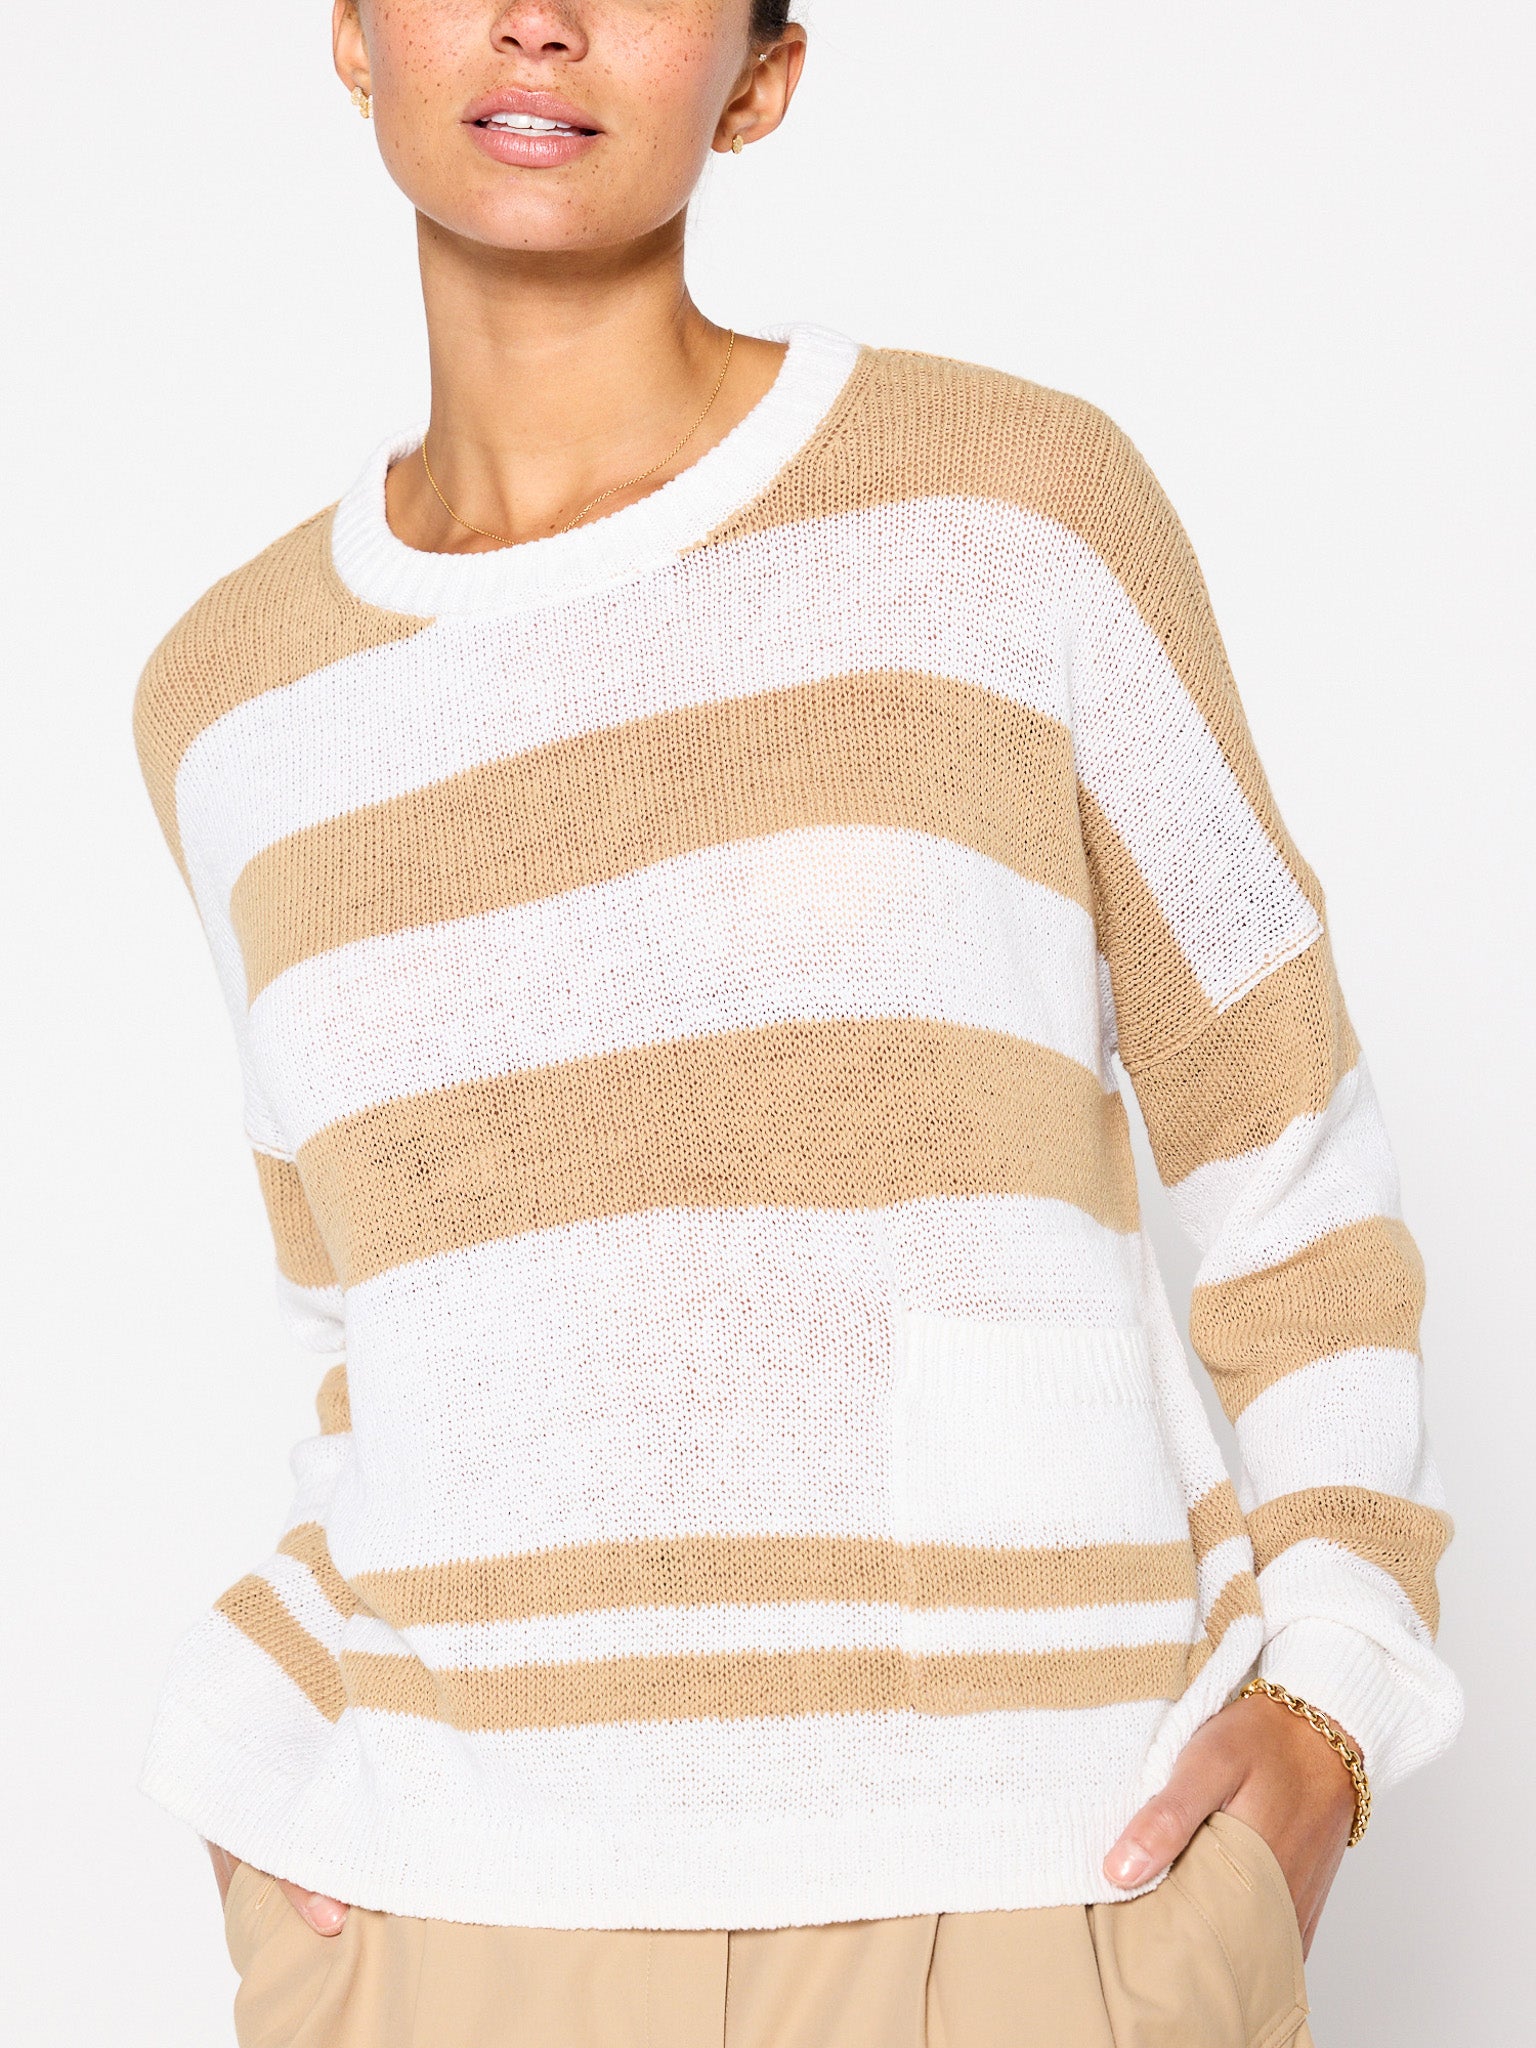 Xila tan white stripe cotton-linen crewneck sweater front view 2